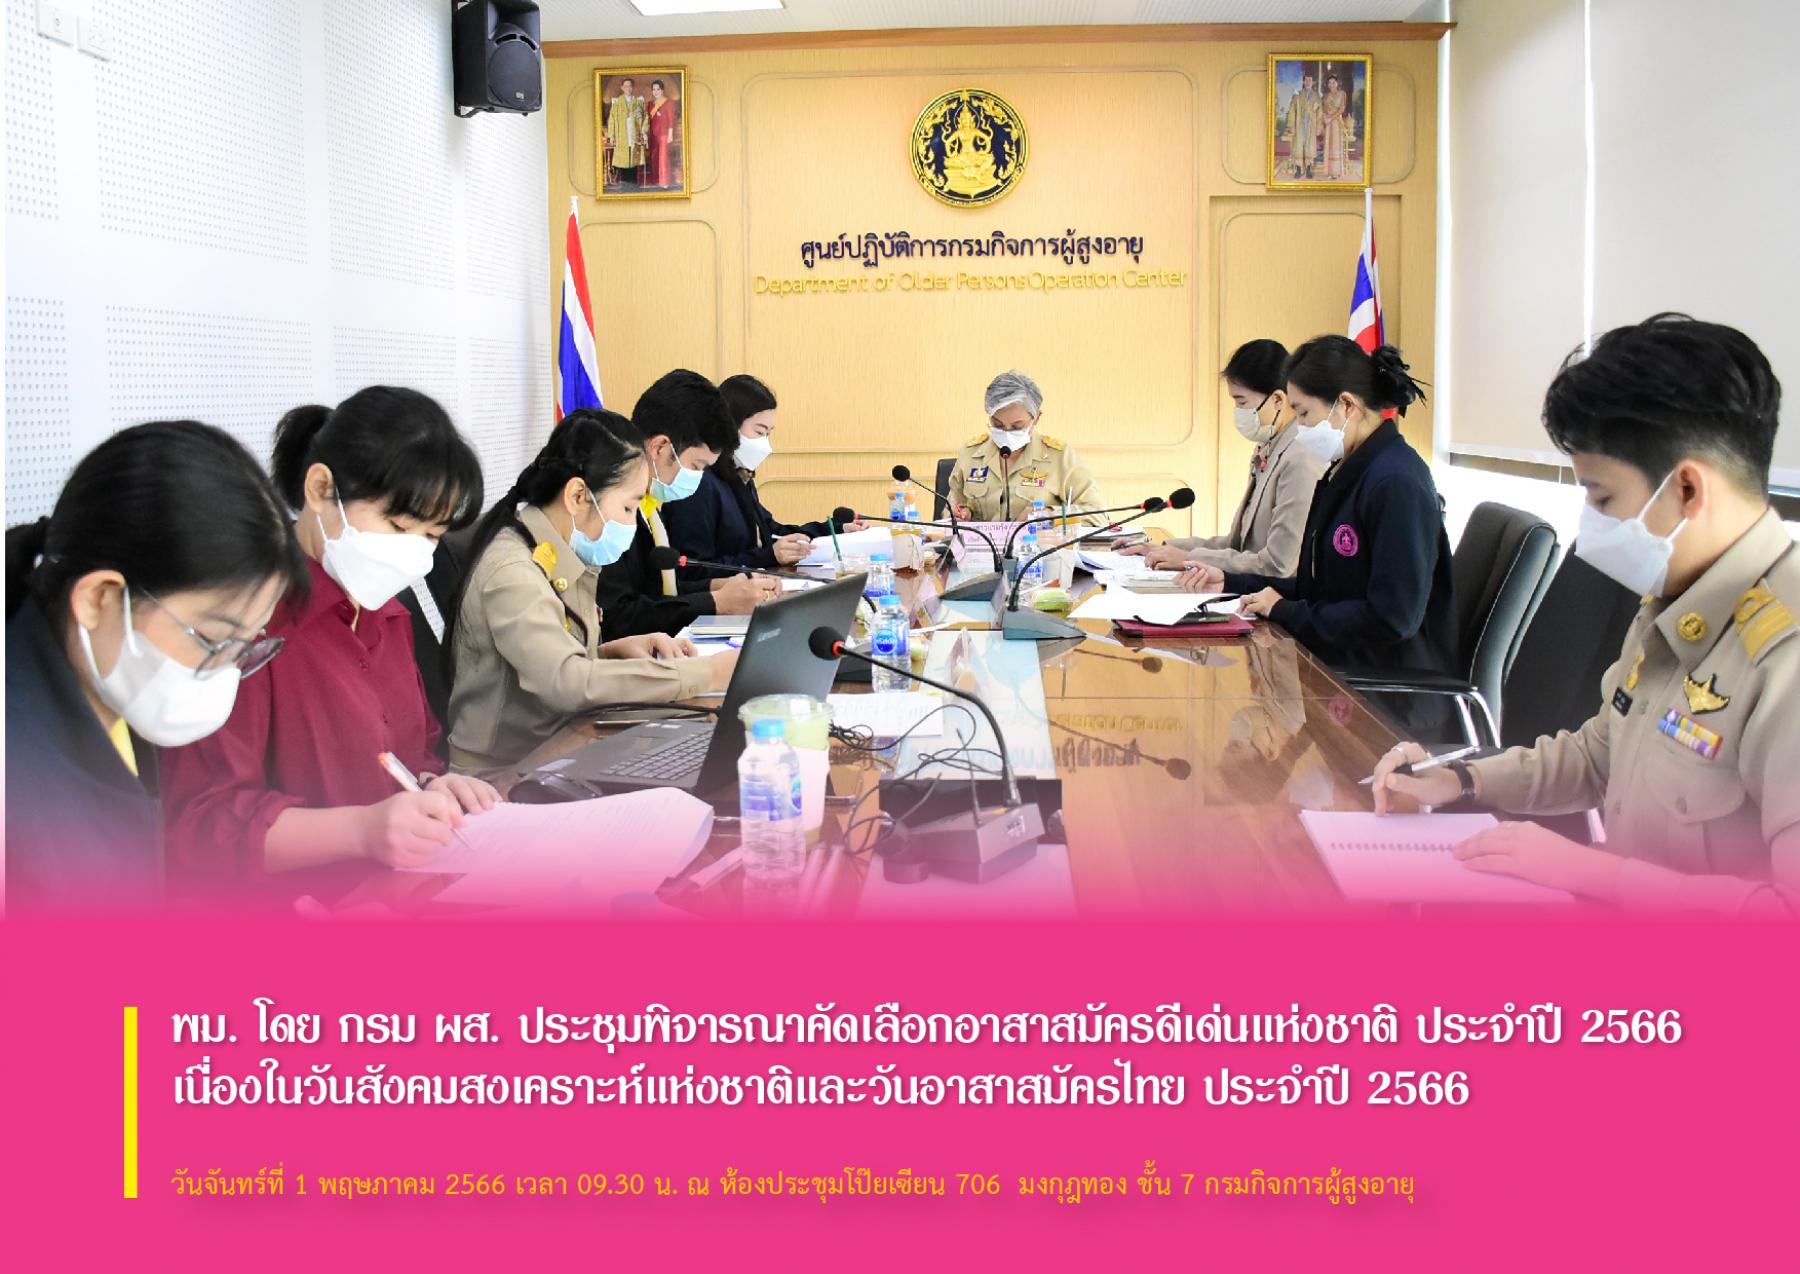 พม. โดย กรม ผส. ประชุมพิจารณาคัดเลือกอาสาสมัครดีเด่นแห่งชาติ ประจำปี 2566 เนื่องในวันสังคมสงเคราะห์แห่งชาติและวันอาสาสมัครไทย ประจำปี 2566